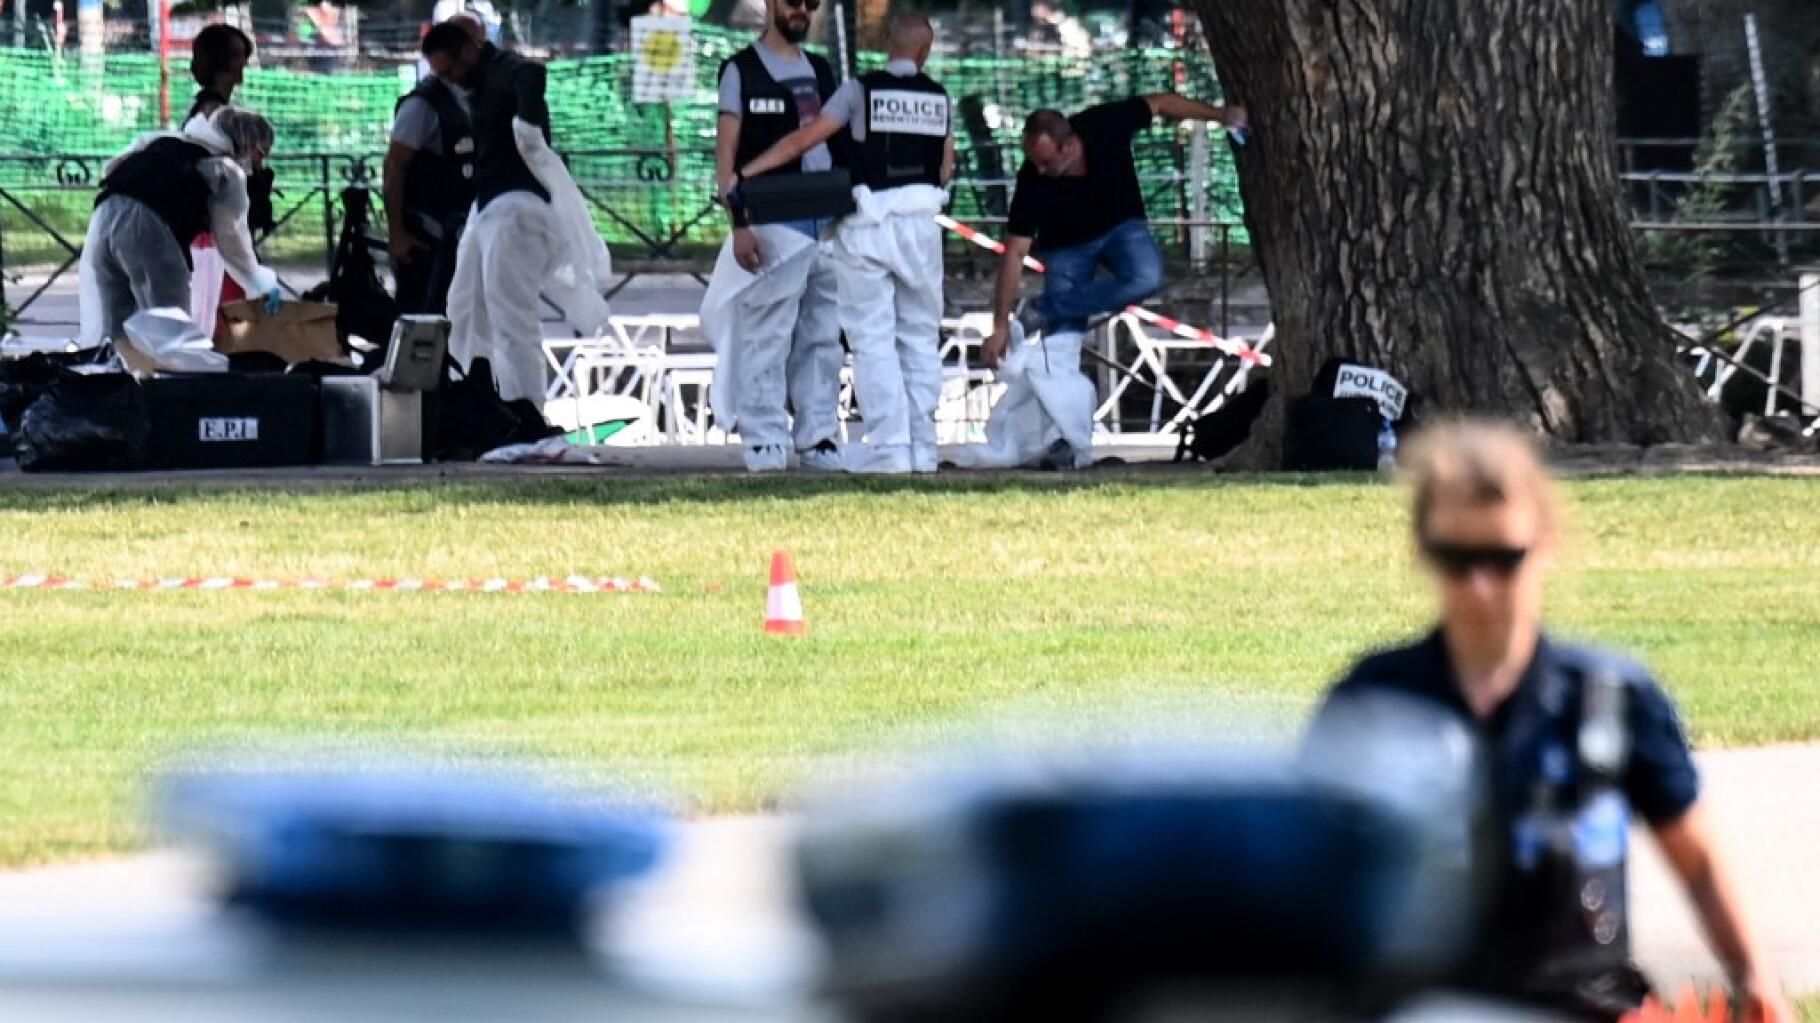 « Un courage qui suscite le respect » : Le « héros aux sacs à dos » salué après l’attaque d’Annecy